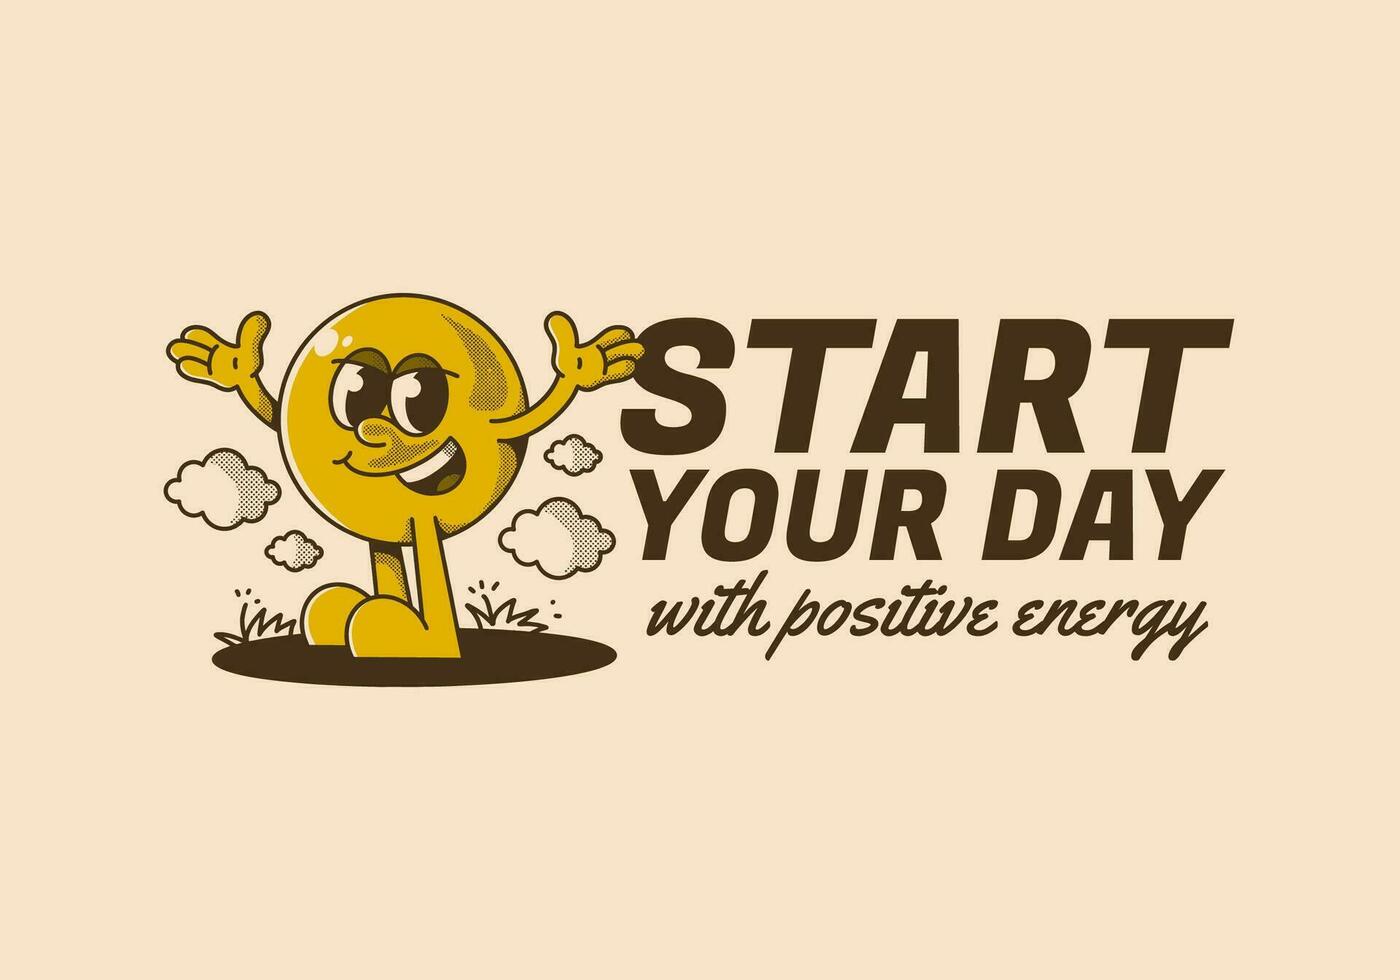 inizio il tuo giorno con positivo energia. palla testa personaggio con mani su e contento espressione vettore